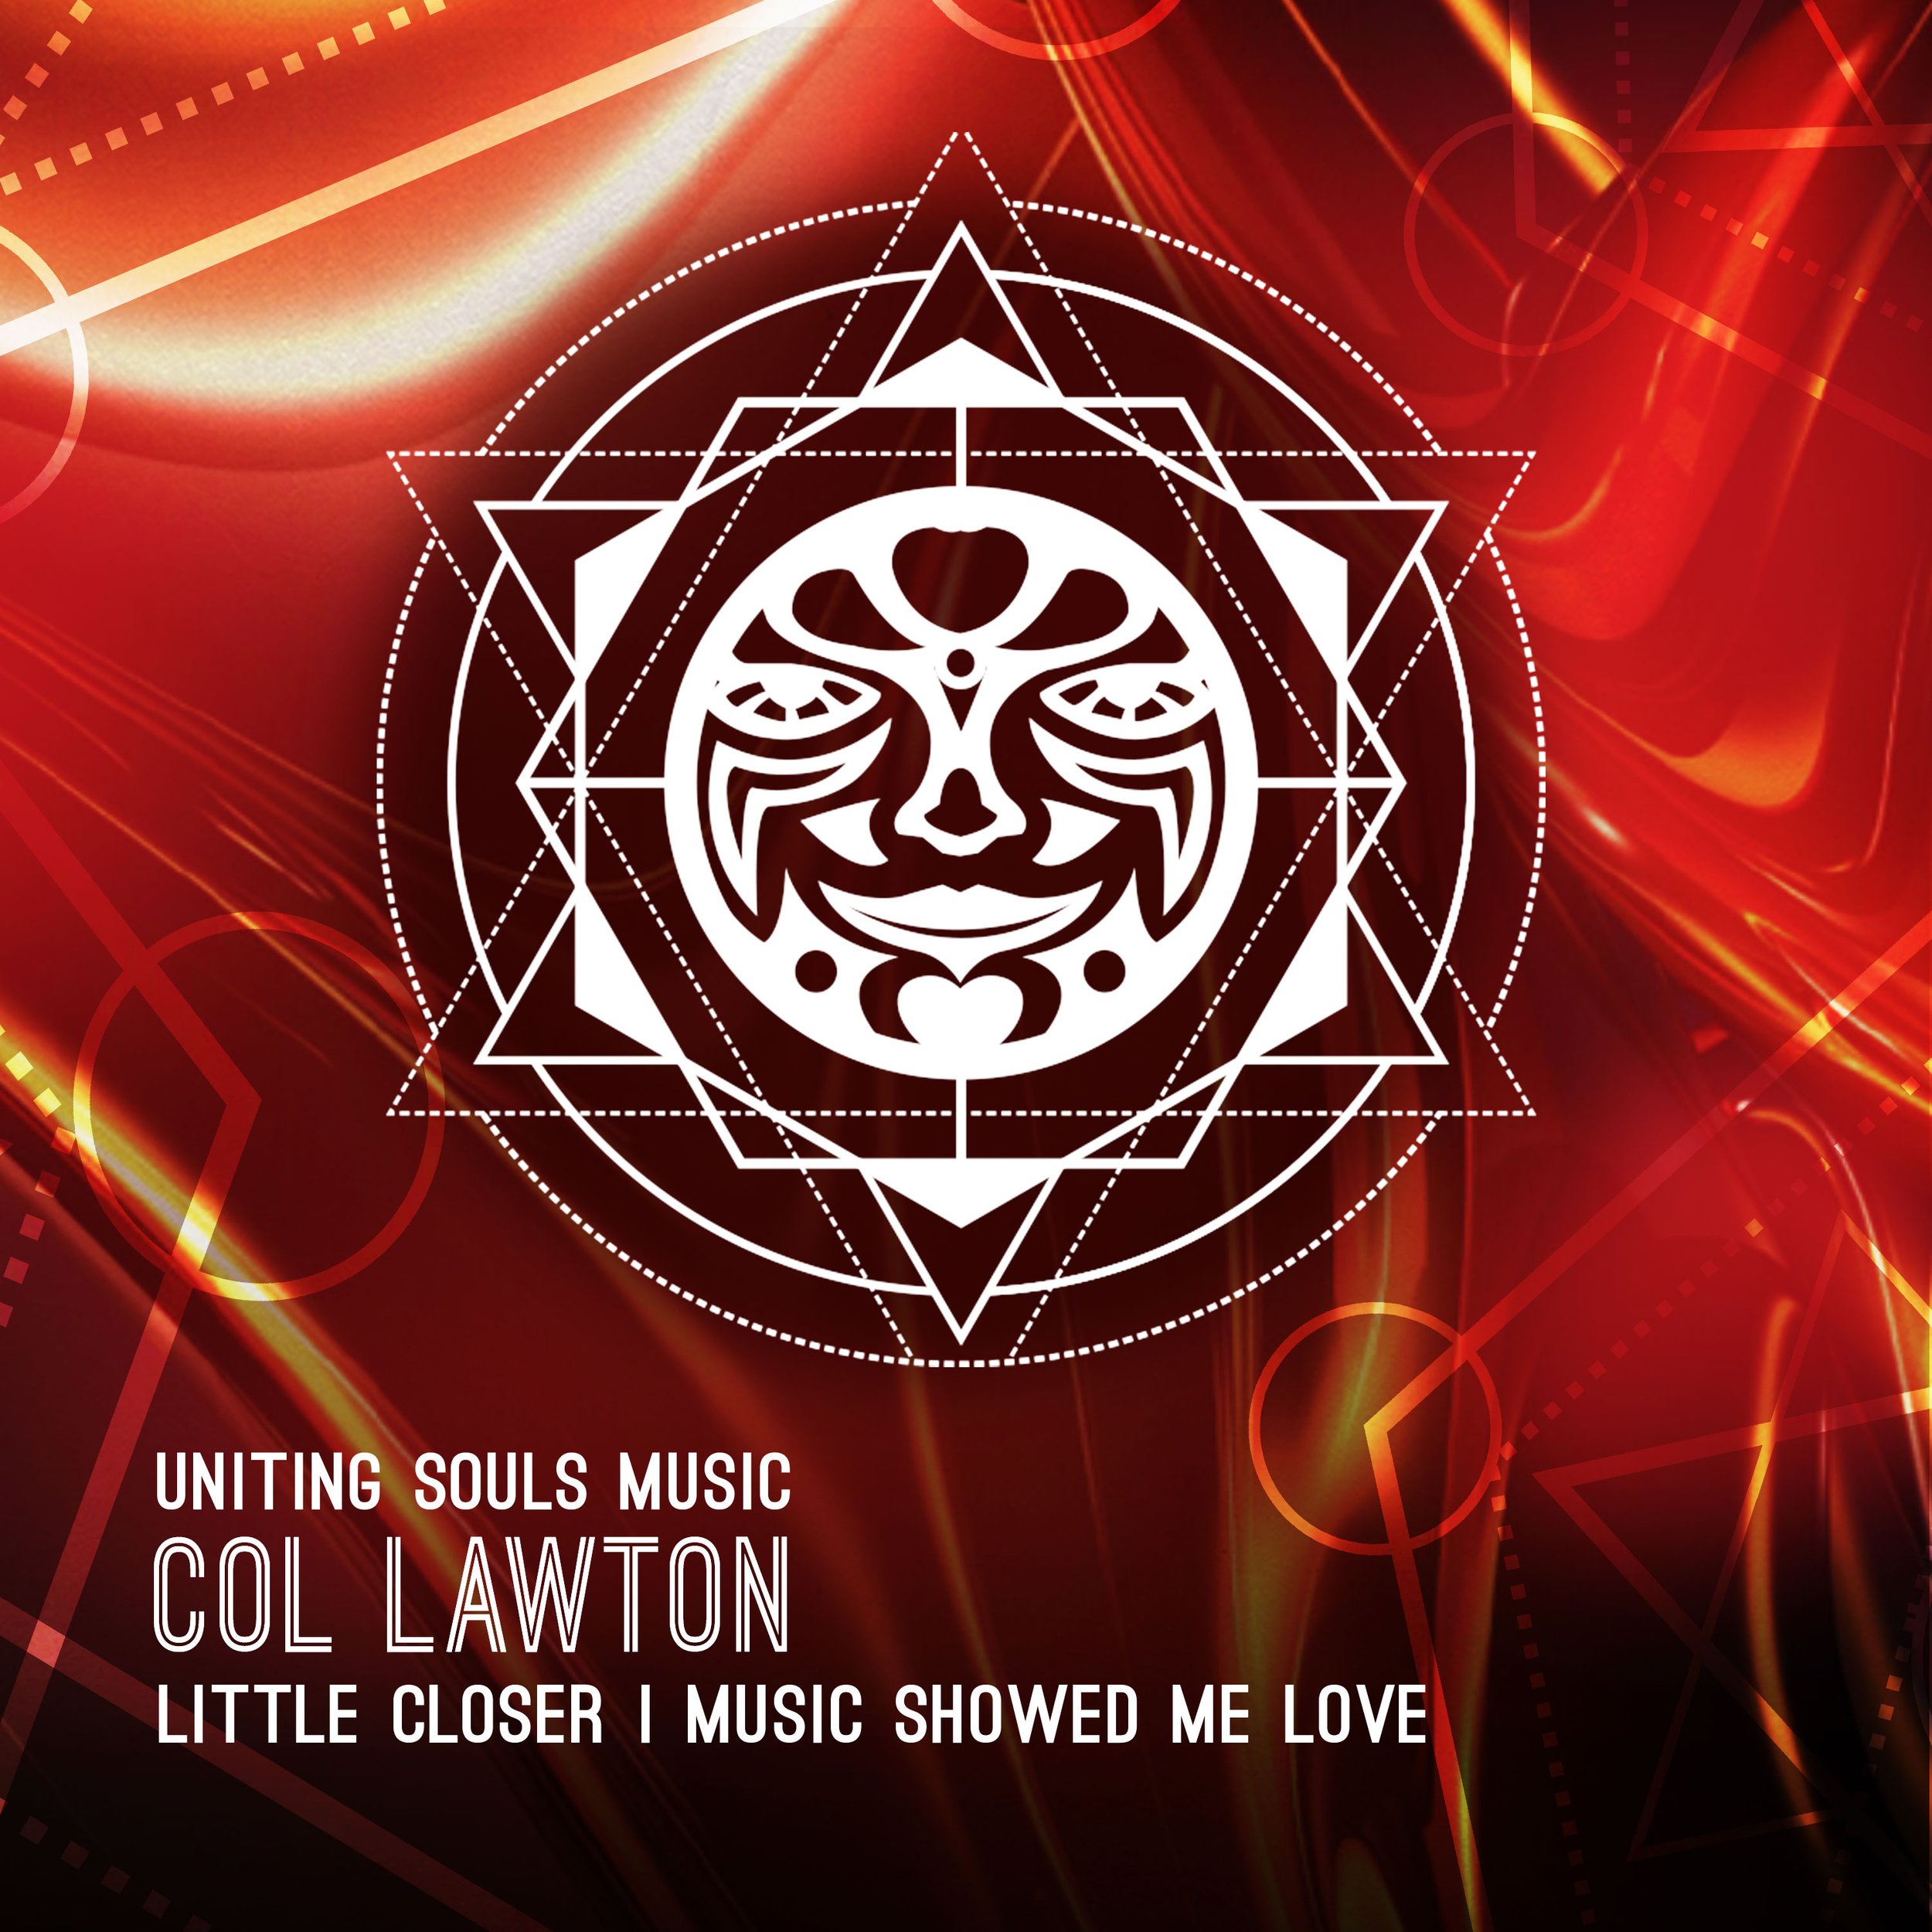 Col Lawton - Little Closer / Music Showed Me Love (Uniting Souls Music)